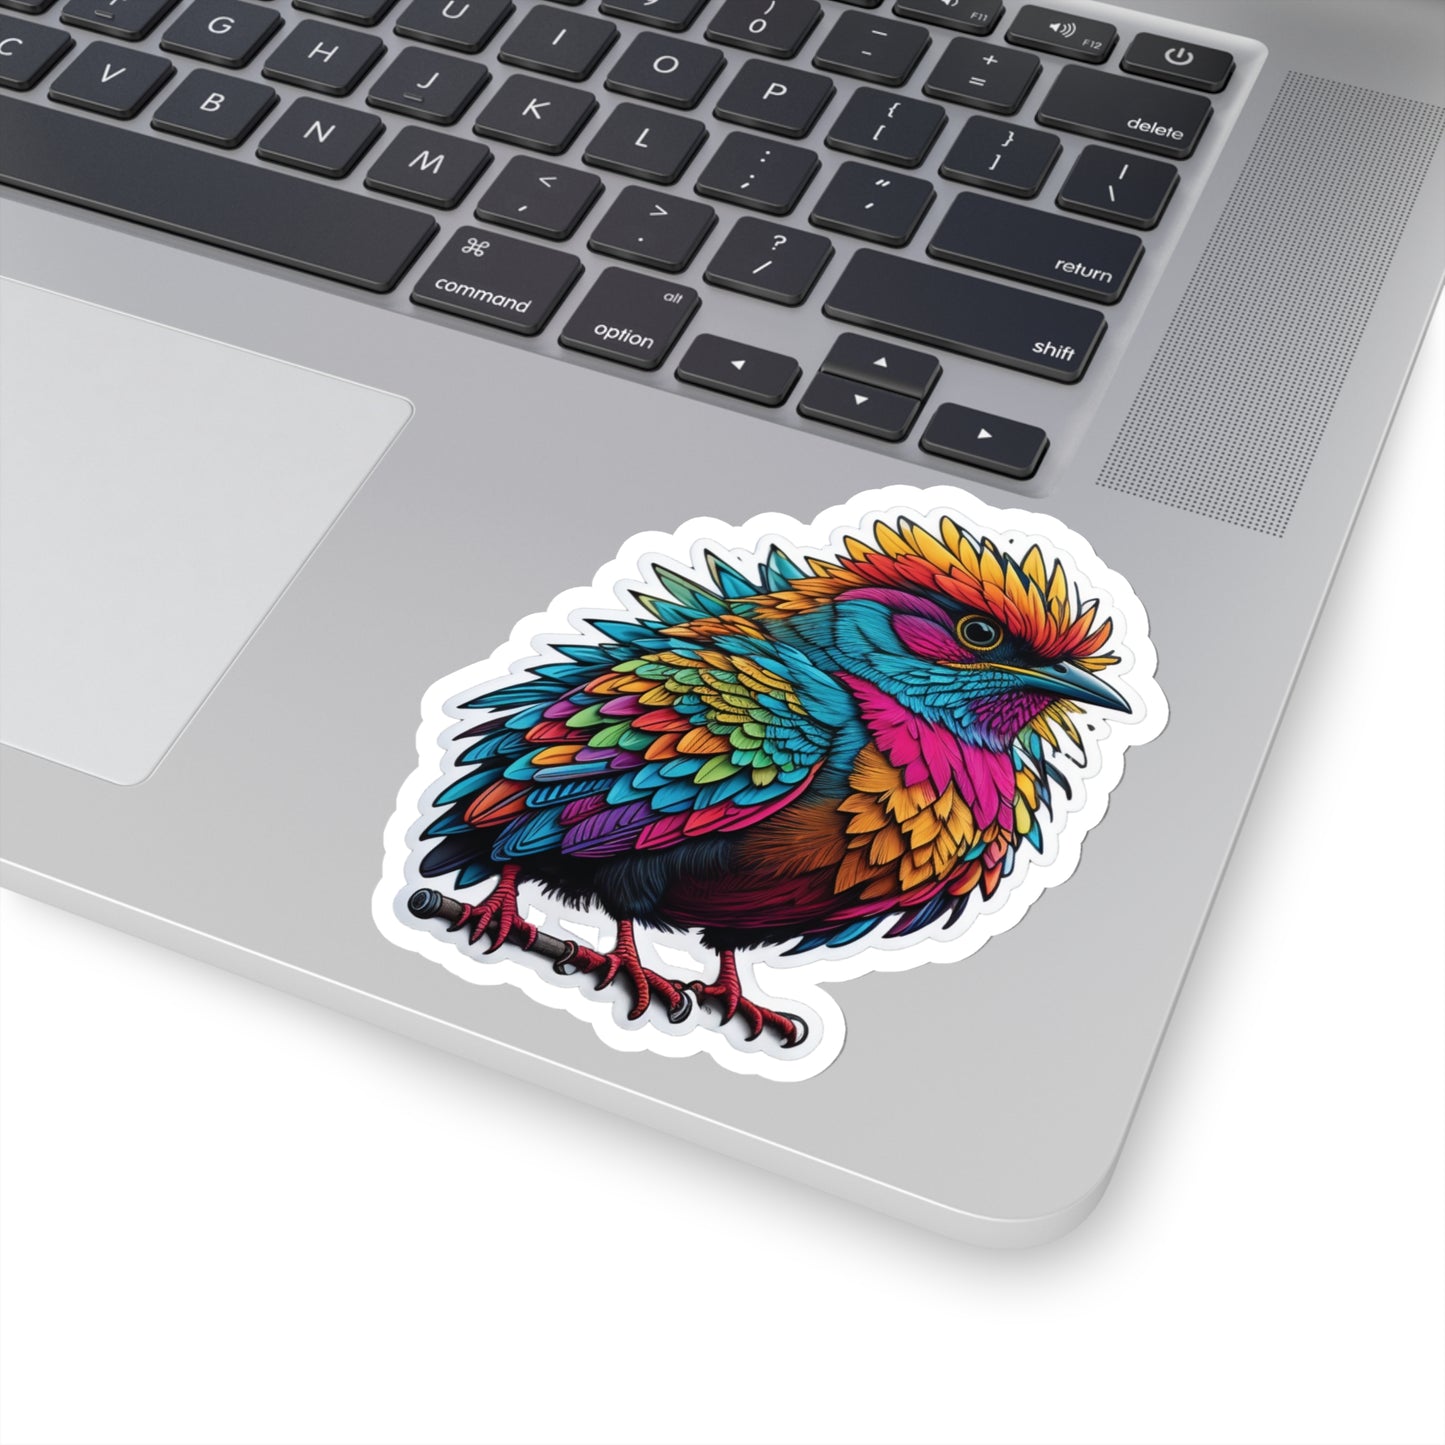 Cute Bird Sticker Bright Colors | Fun Stickers | Happy Stickers | Must Have Stickers | Laptop Stickers | Best Stickers | Gift Idea